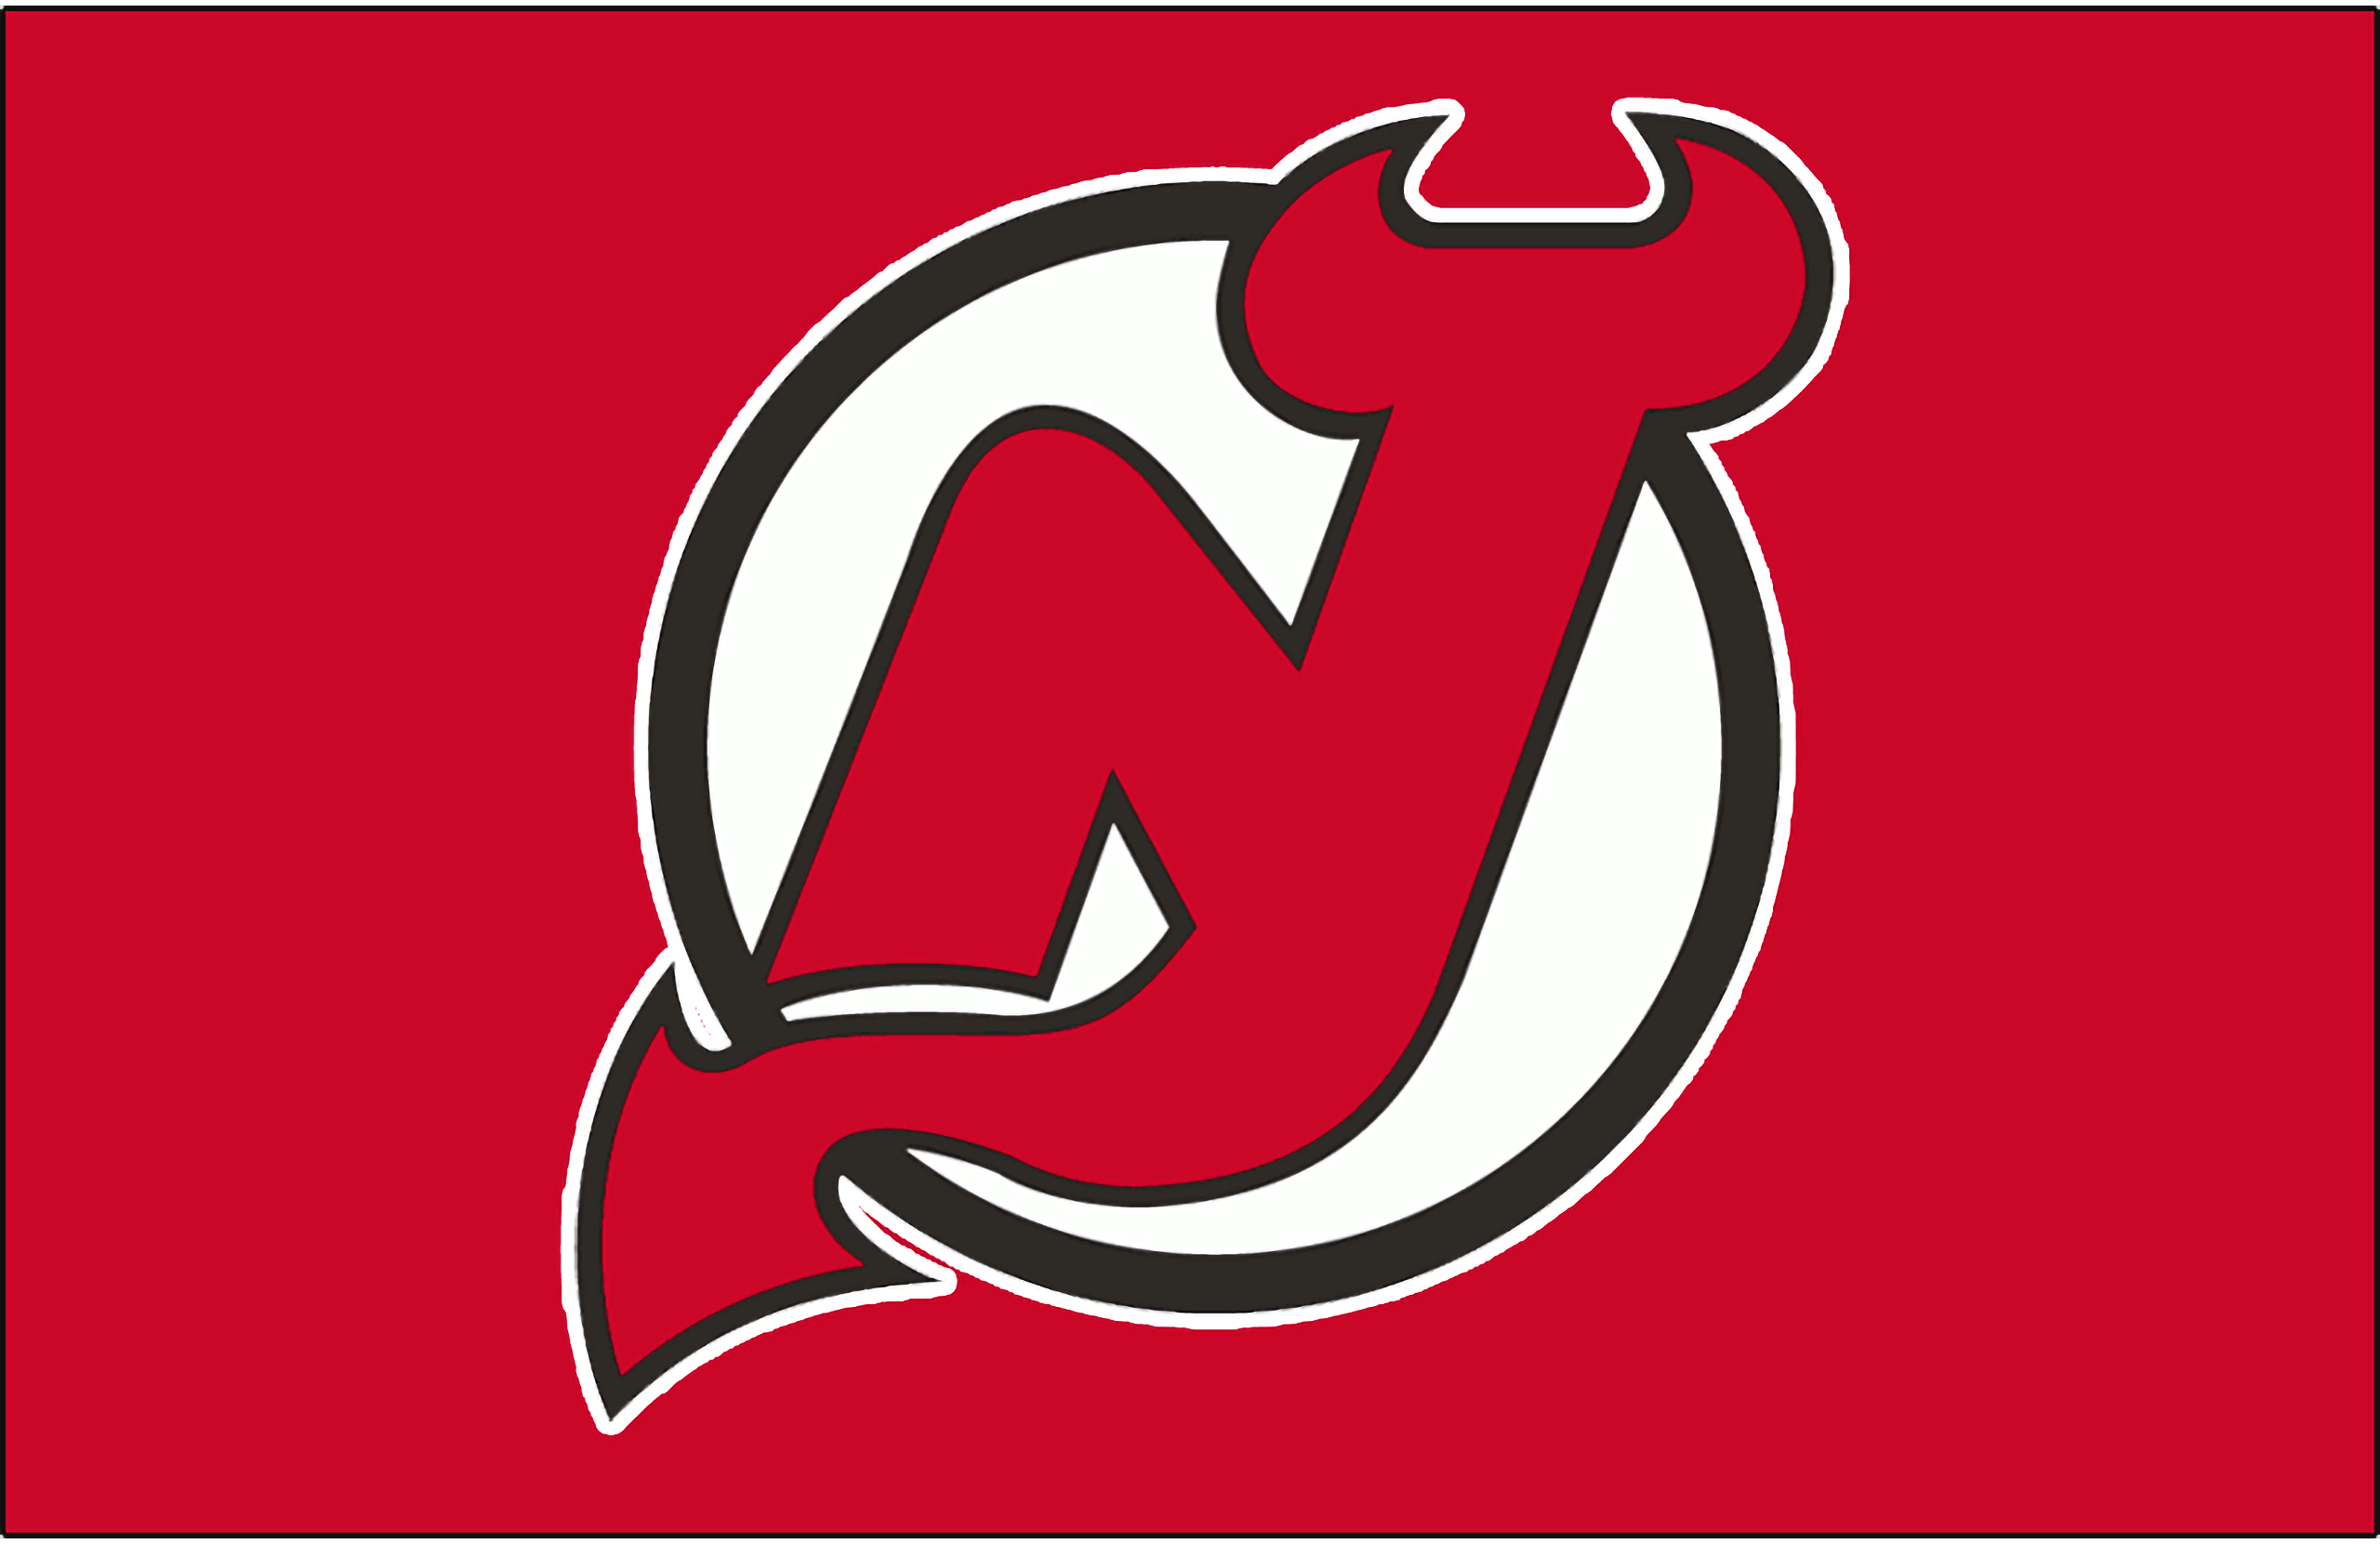 New jersey devils. Хоккейный клуб Нью-джерси Девилз. Нью джерси НХЛ логотип. Хоккейный клуб Нью-джерси Девилз логотип. Нью Девилс джерси Девилз.